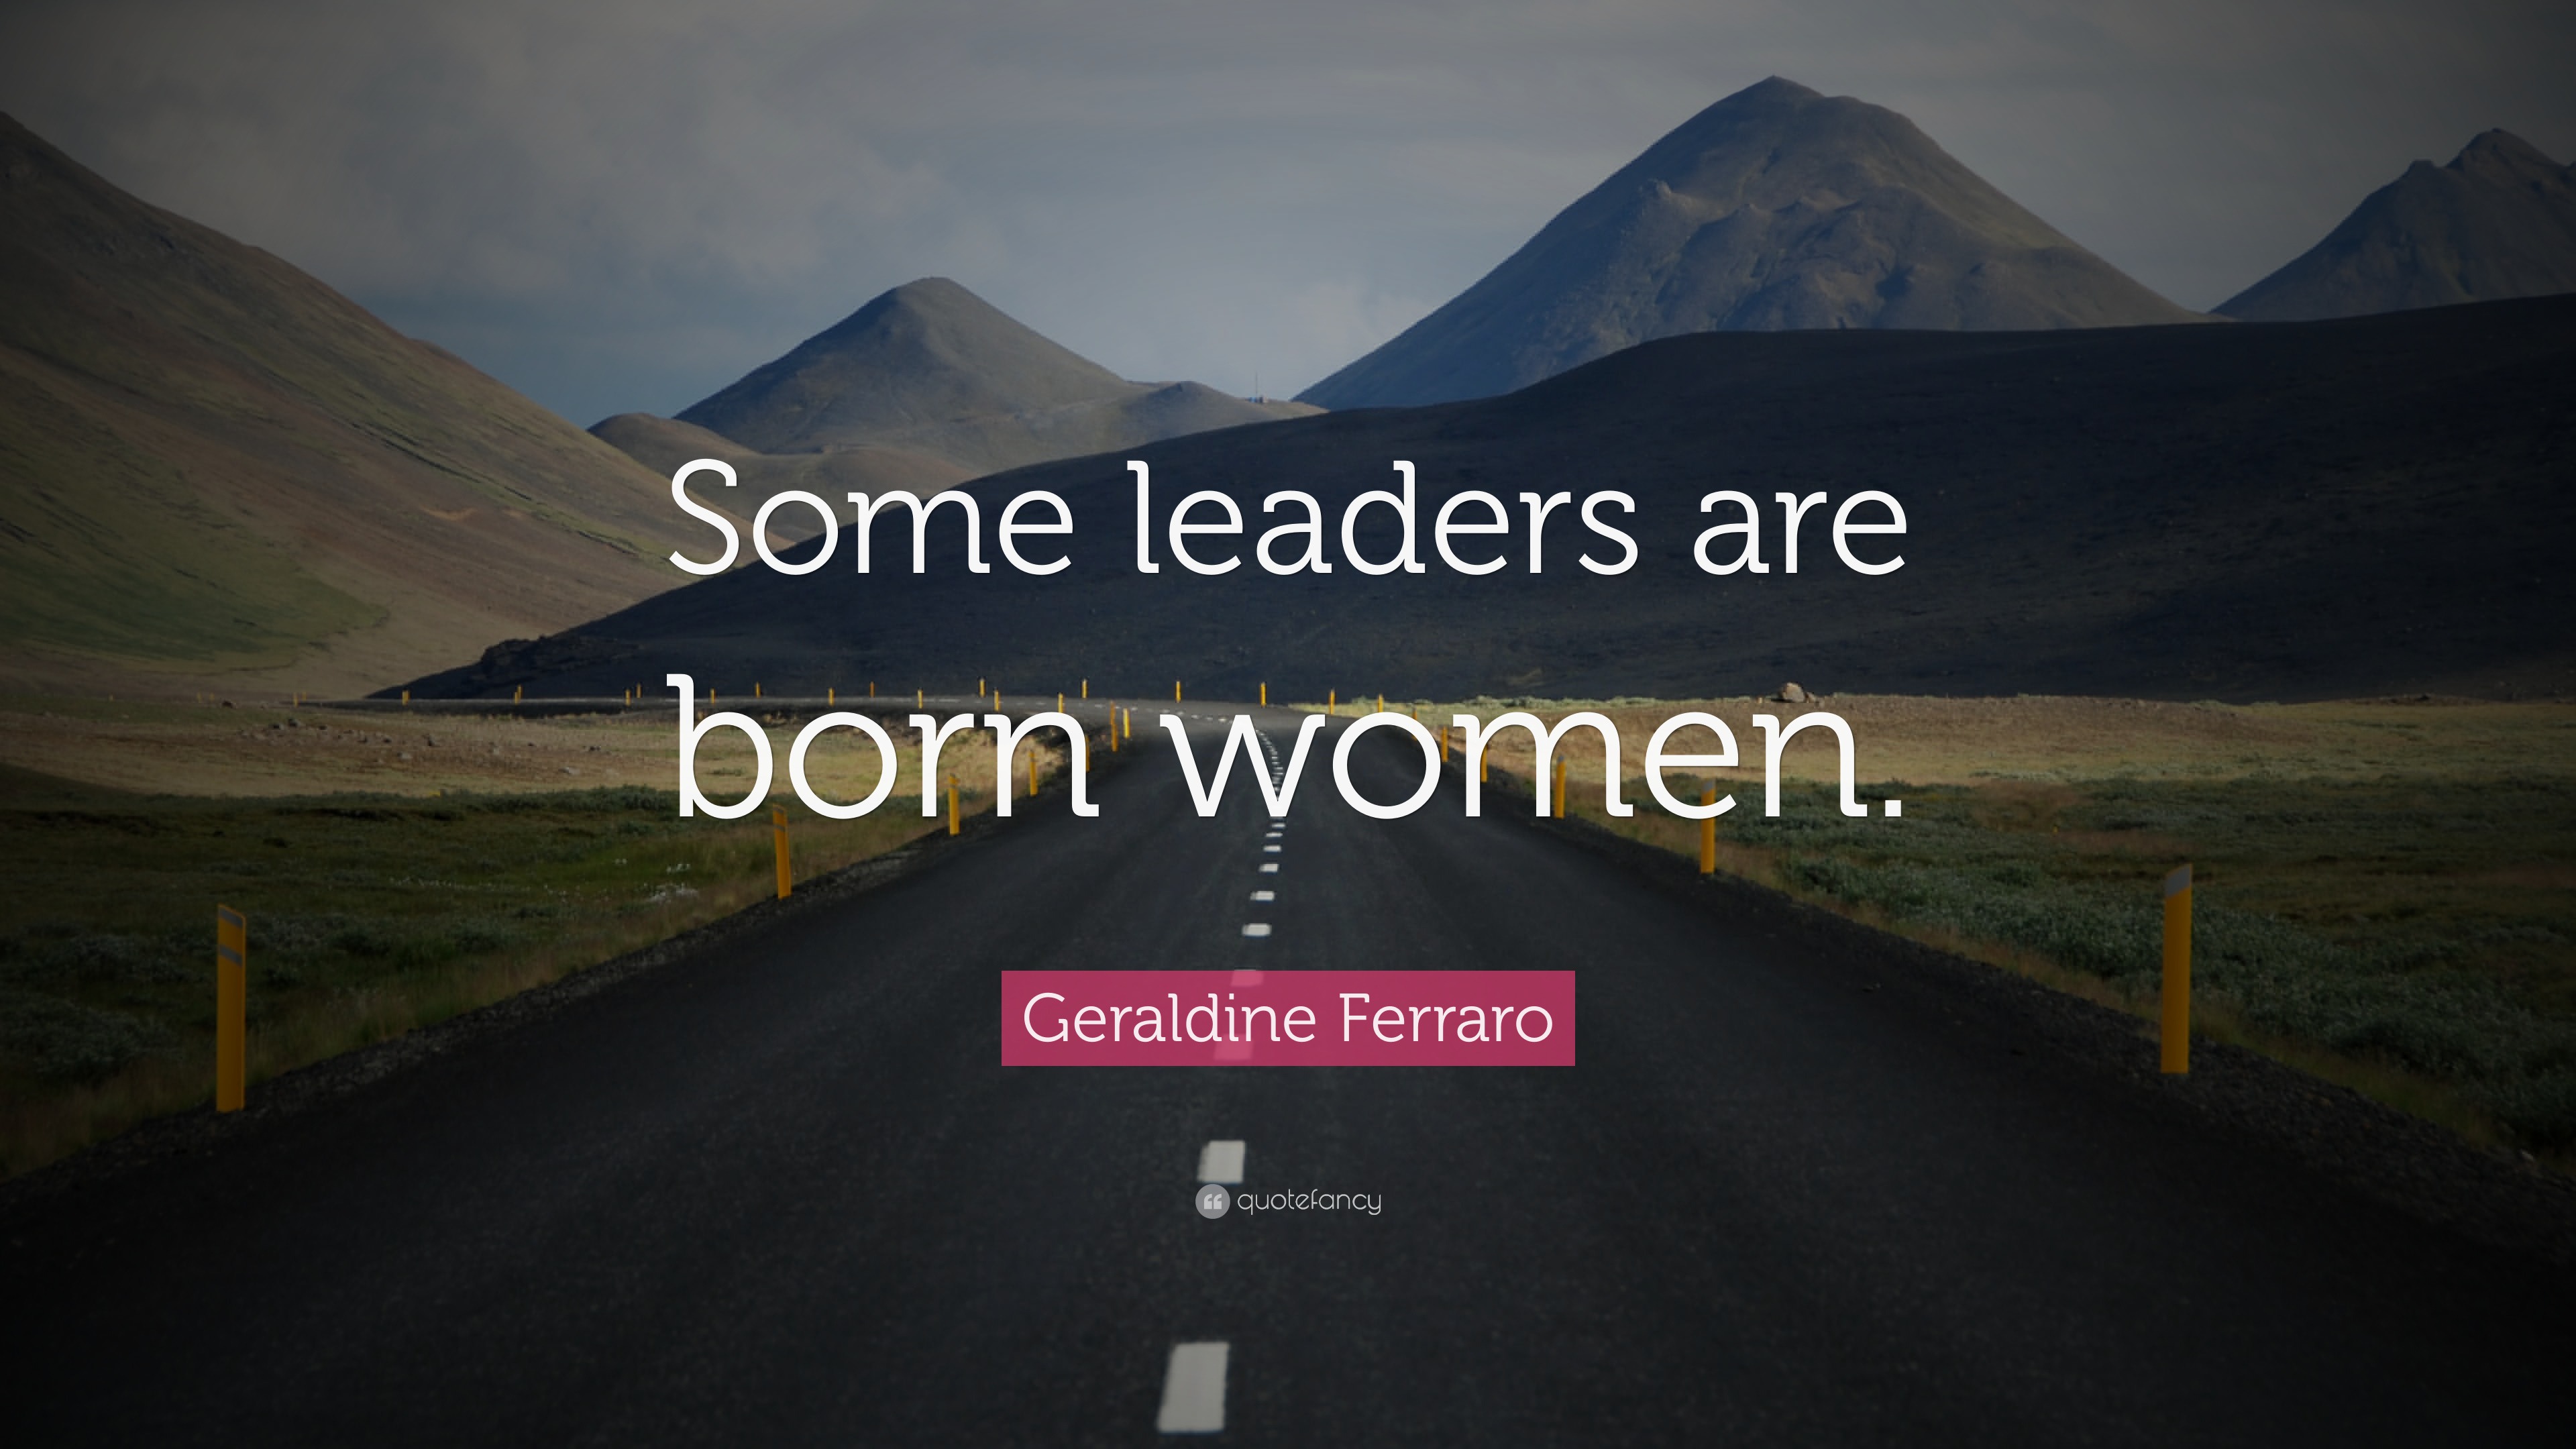 Geraldine Ferraro Quote: “Some leaders are born women.”